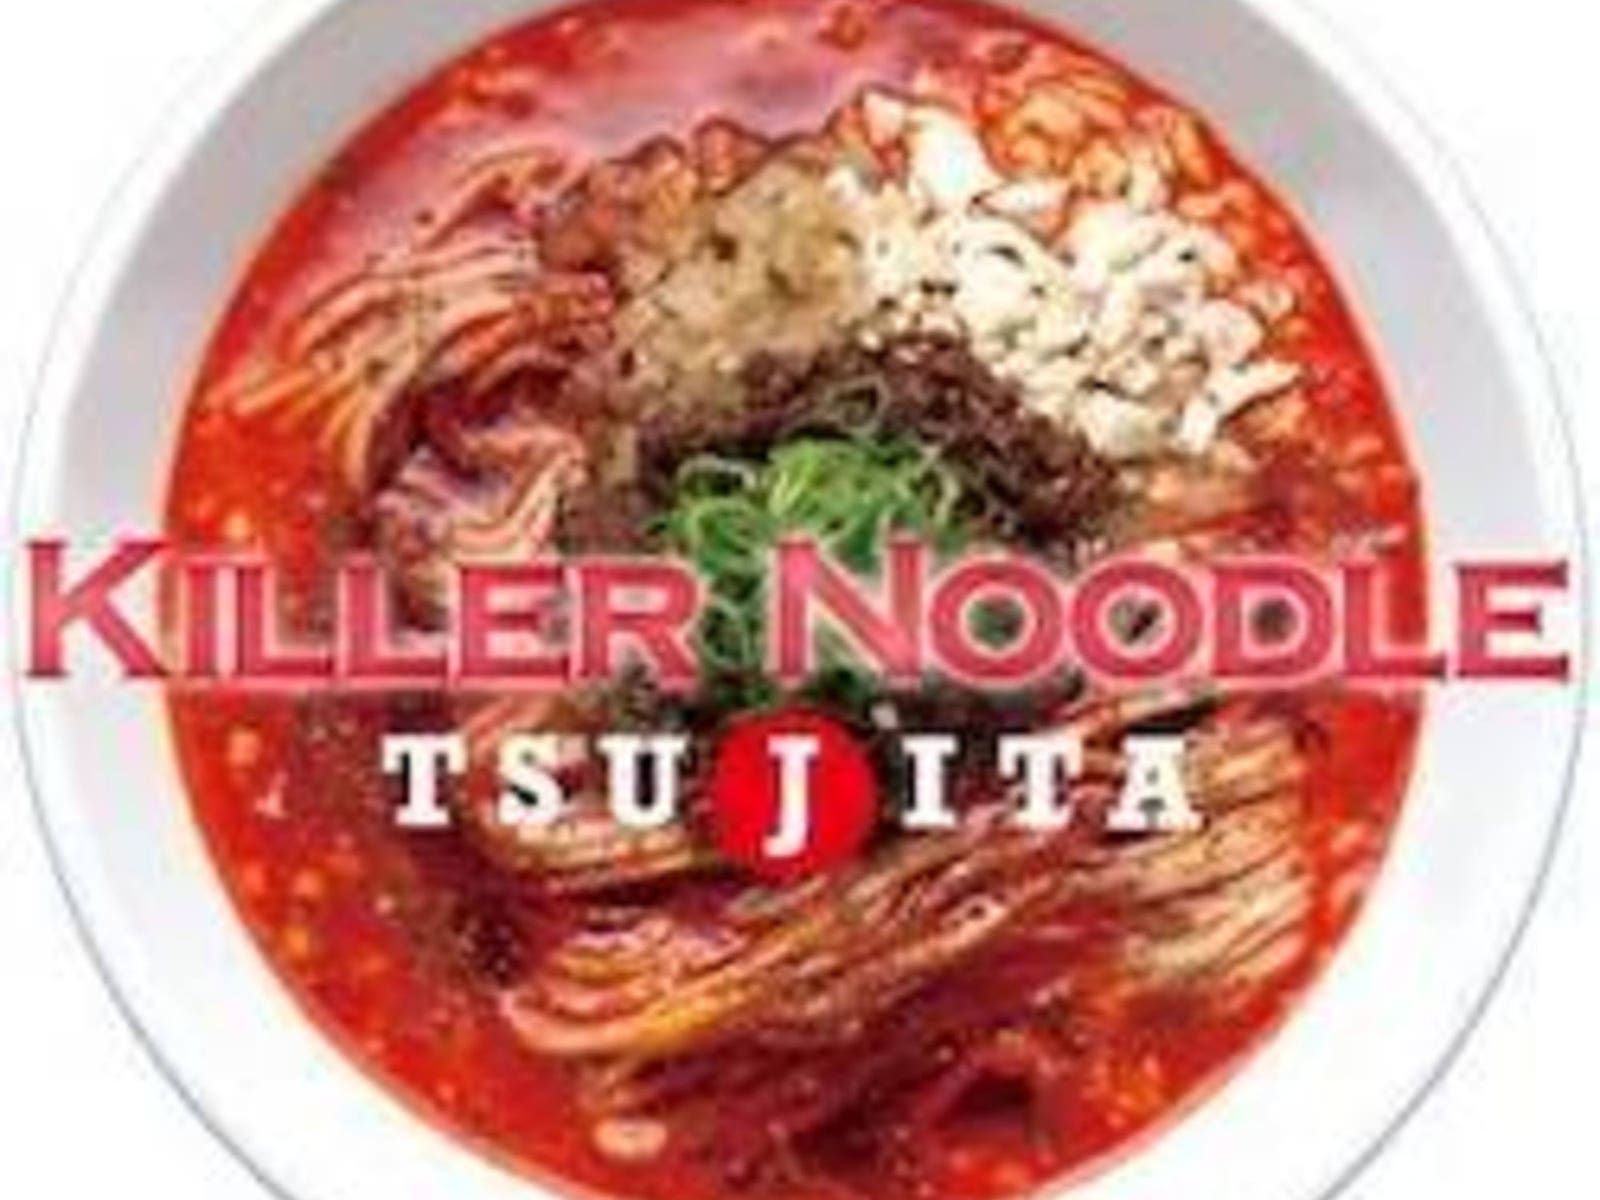 Killer Noodle Tsujita